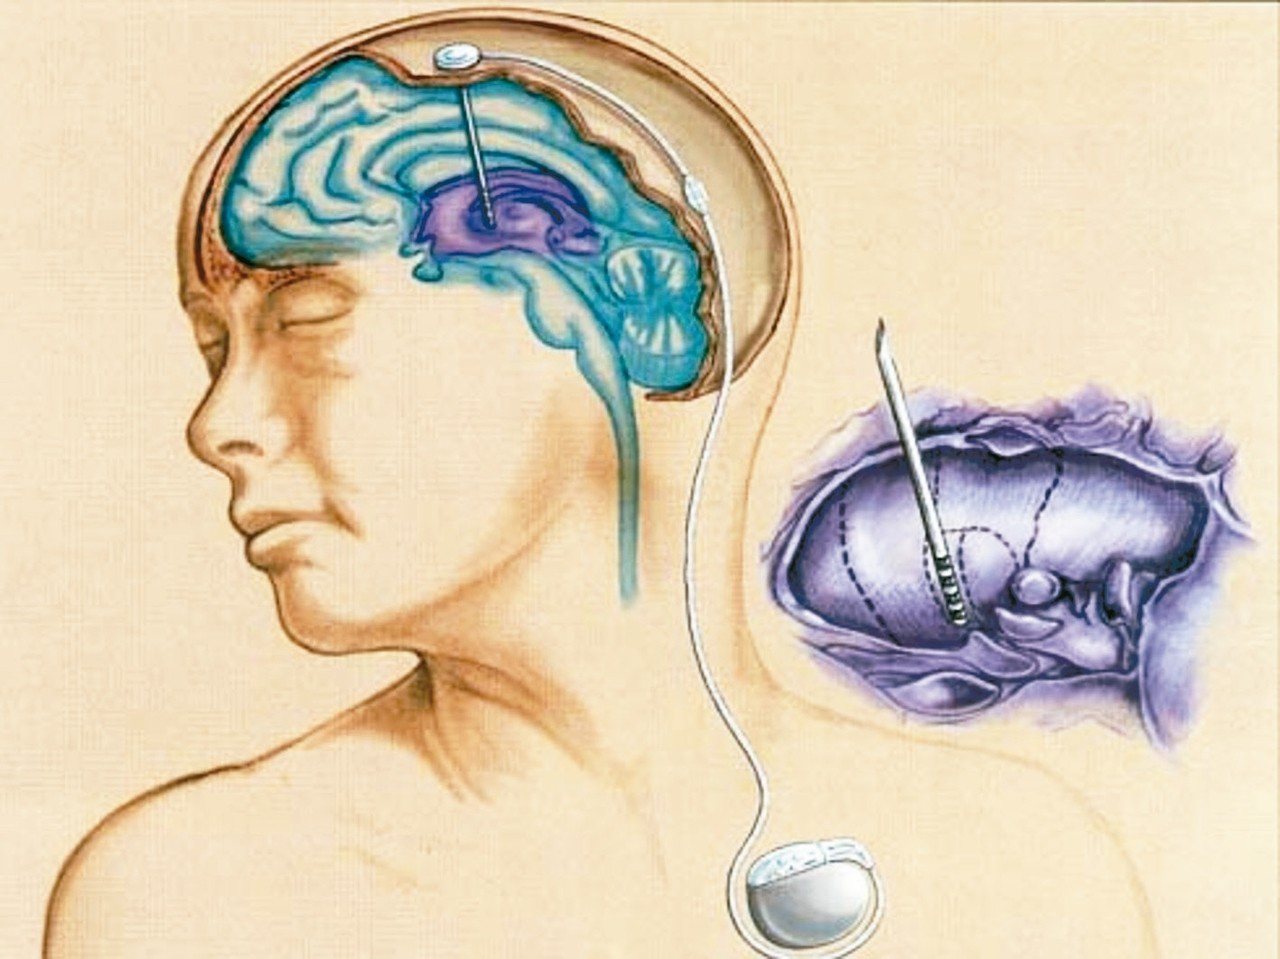 目前醫學界採用深腦電刺激手術來治療合併有藥效波動的中重度巴金森症患者（圖），利用深腦電極裝置（又稱晶片）植入患者腦部的神經核，並將電極連接胸前的電刺激器，術後醫師可利用此一深腦電極，注入微小的電流，來調節控制異常的大腦運動功能，如此可大幅取代患者高度依賴多巴胺藥物來改善運動症狀的情況。